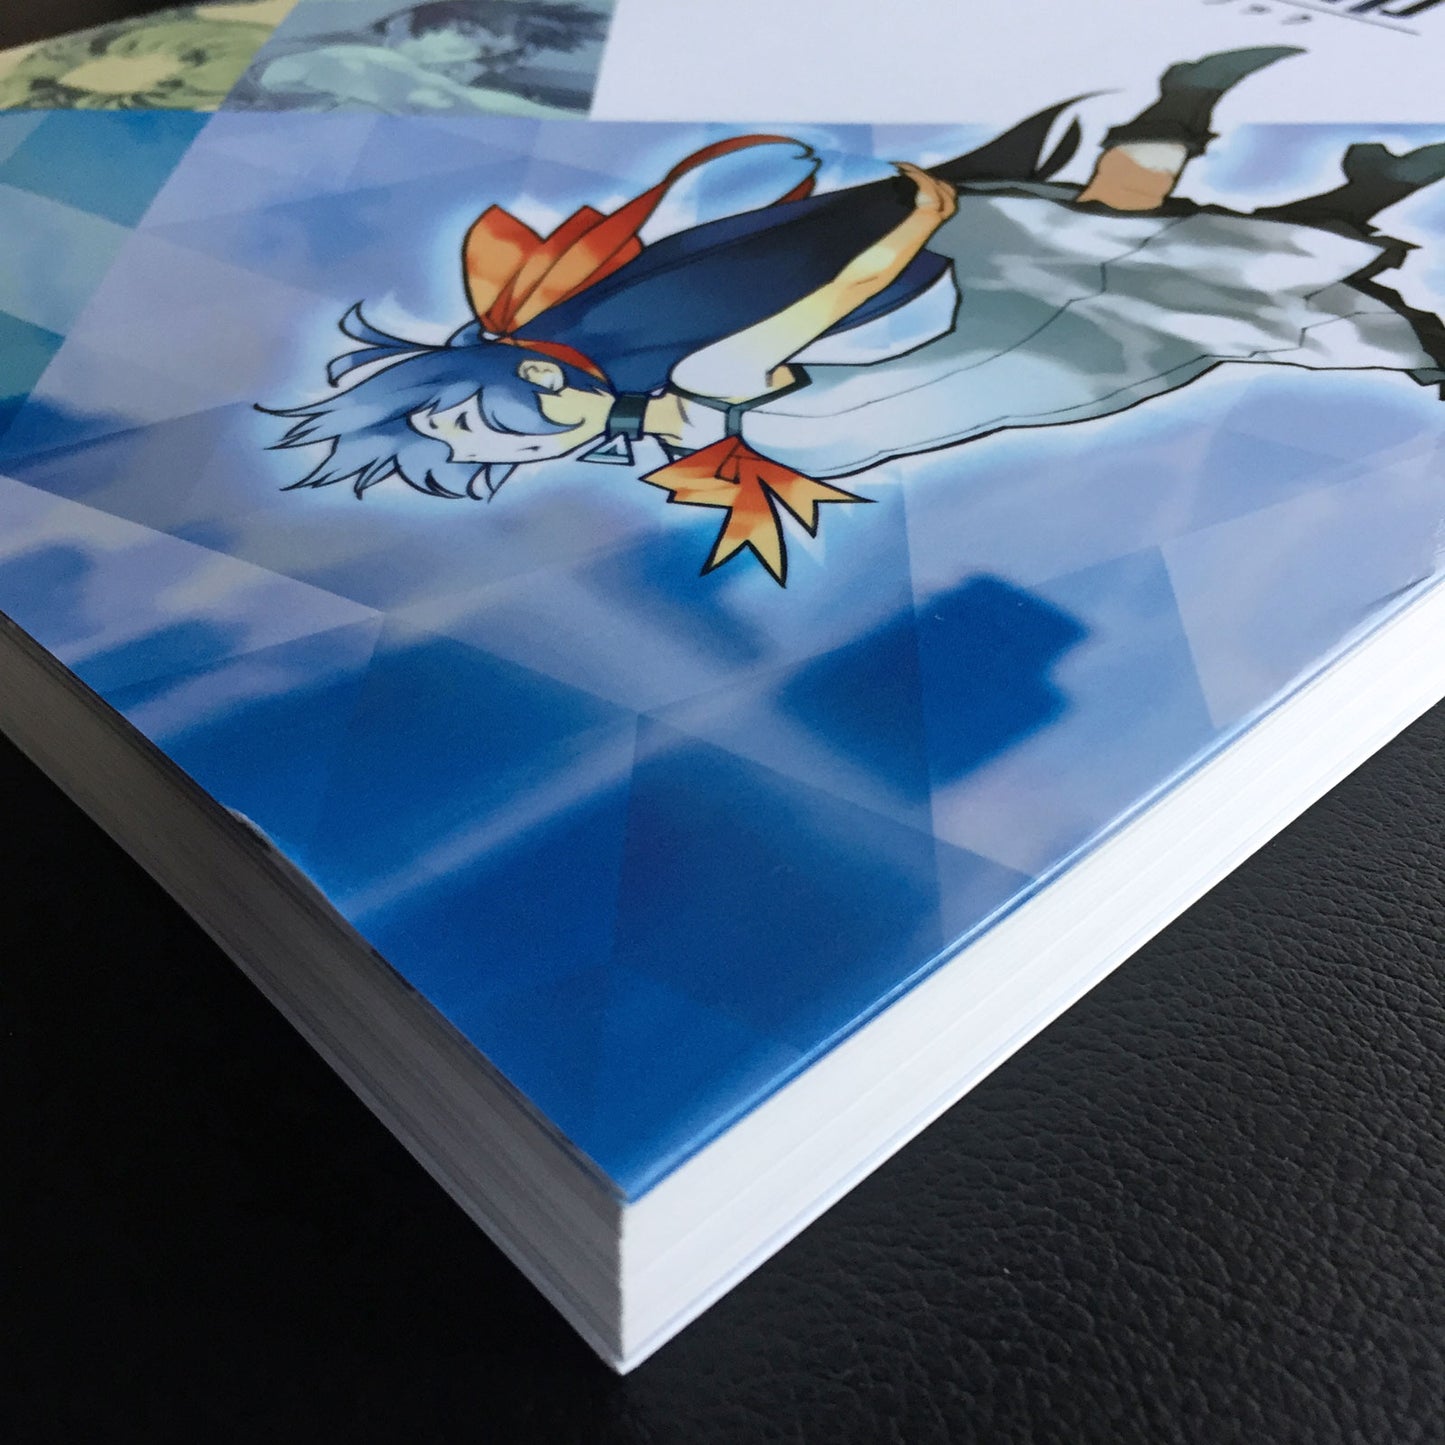 Shoumetsu Toshi Official Visual Fan Book